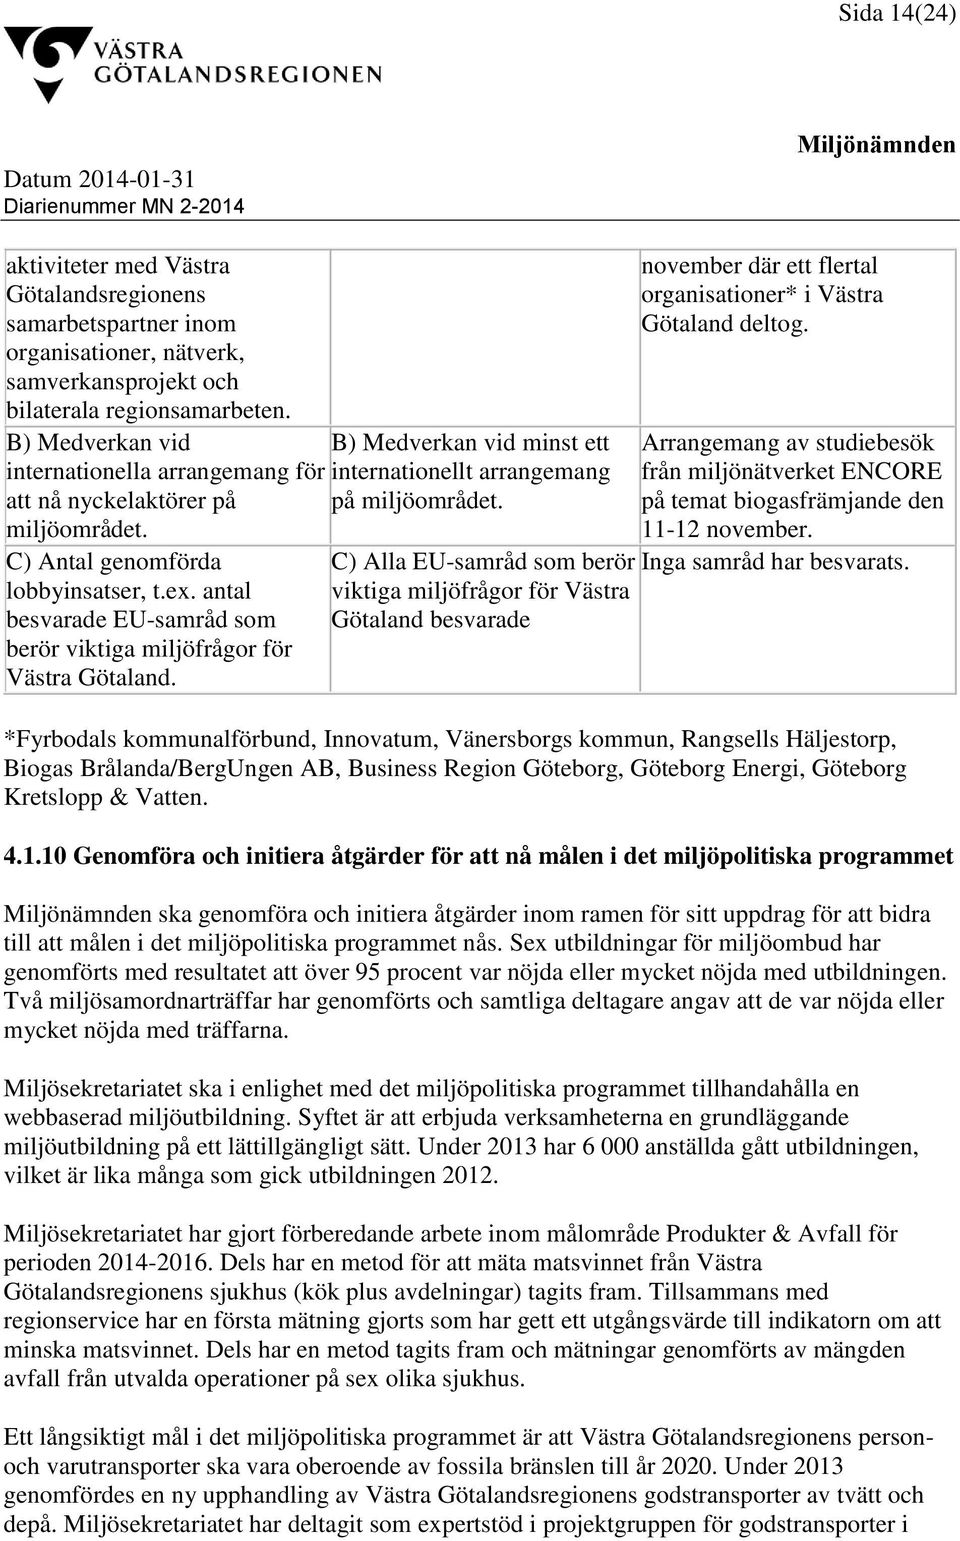 antal besvarade EU-samråd som berör viktiga miljöfrågor för Västra Götaland. B) Medverkan vid minst ett internationellt arrangemang på miljöområdet.